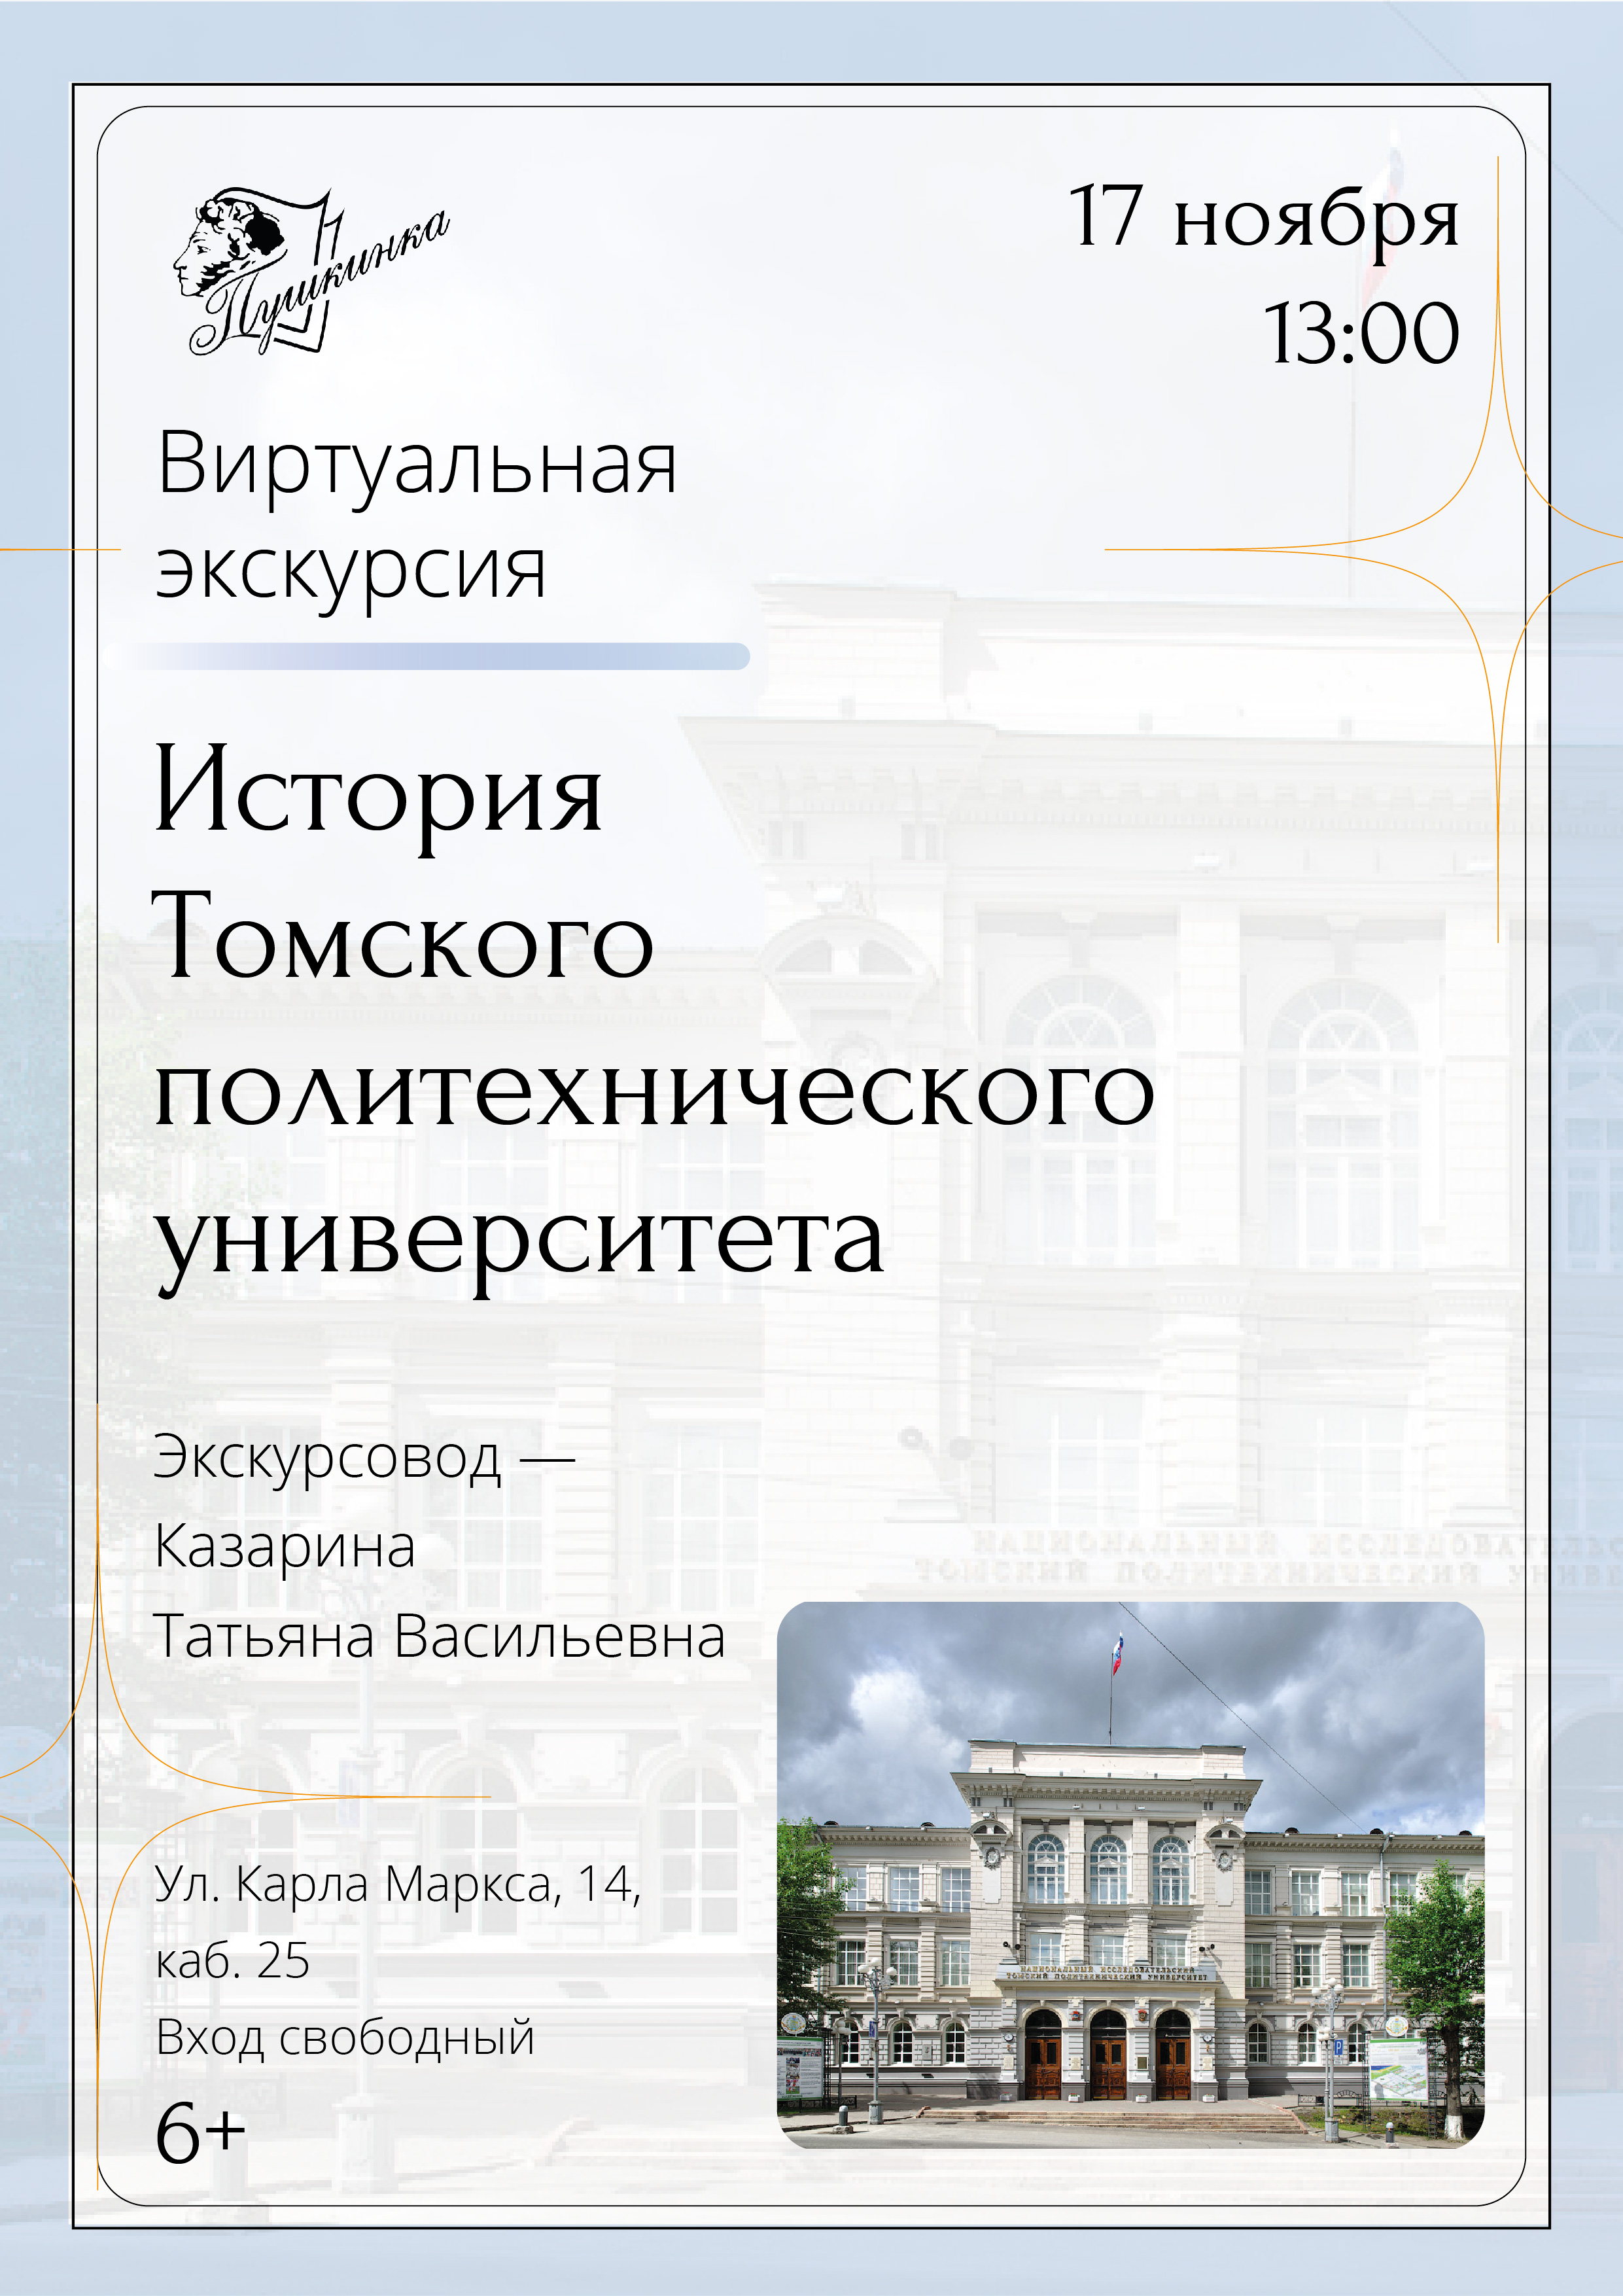 Виртуальная экскурсия «История Томского политехнического университета» (6+)